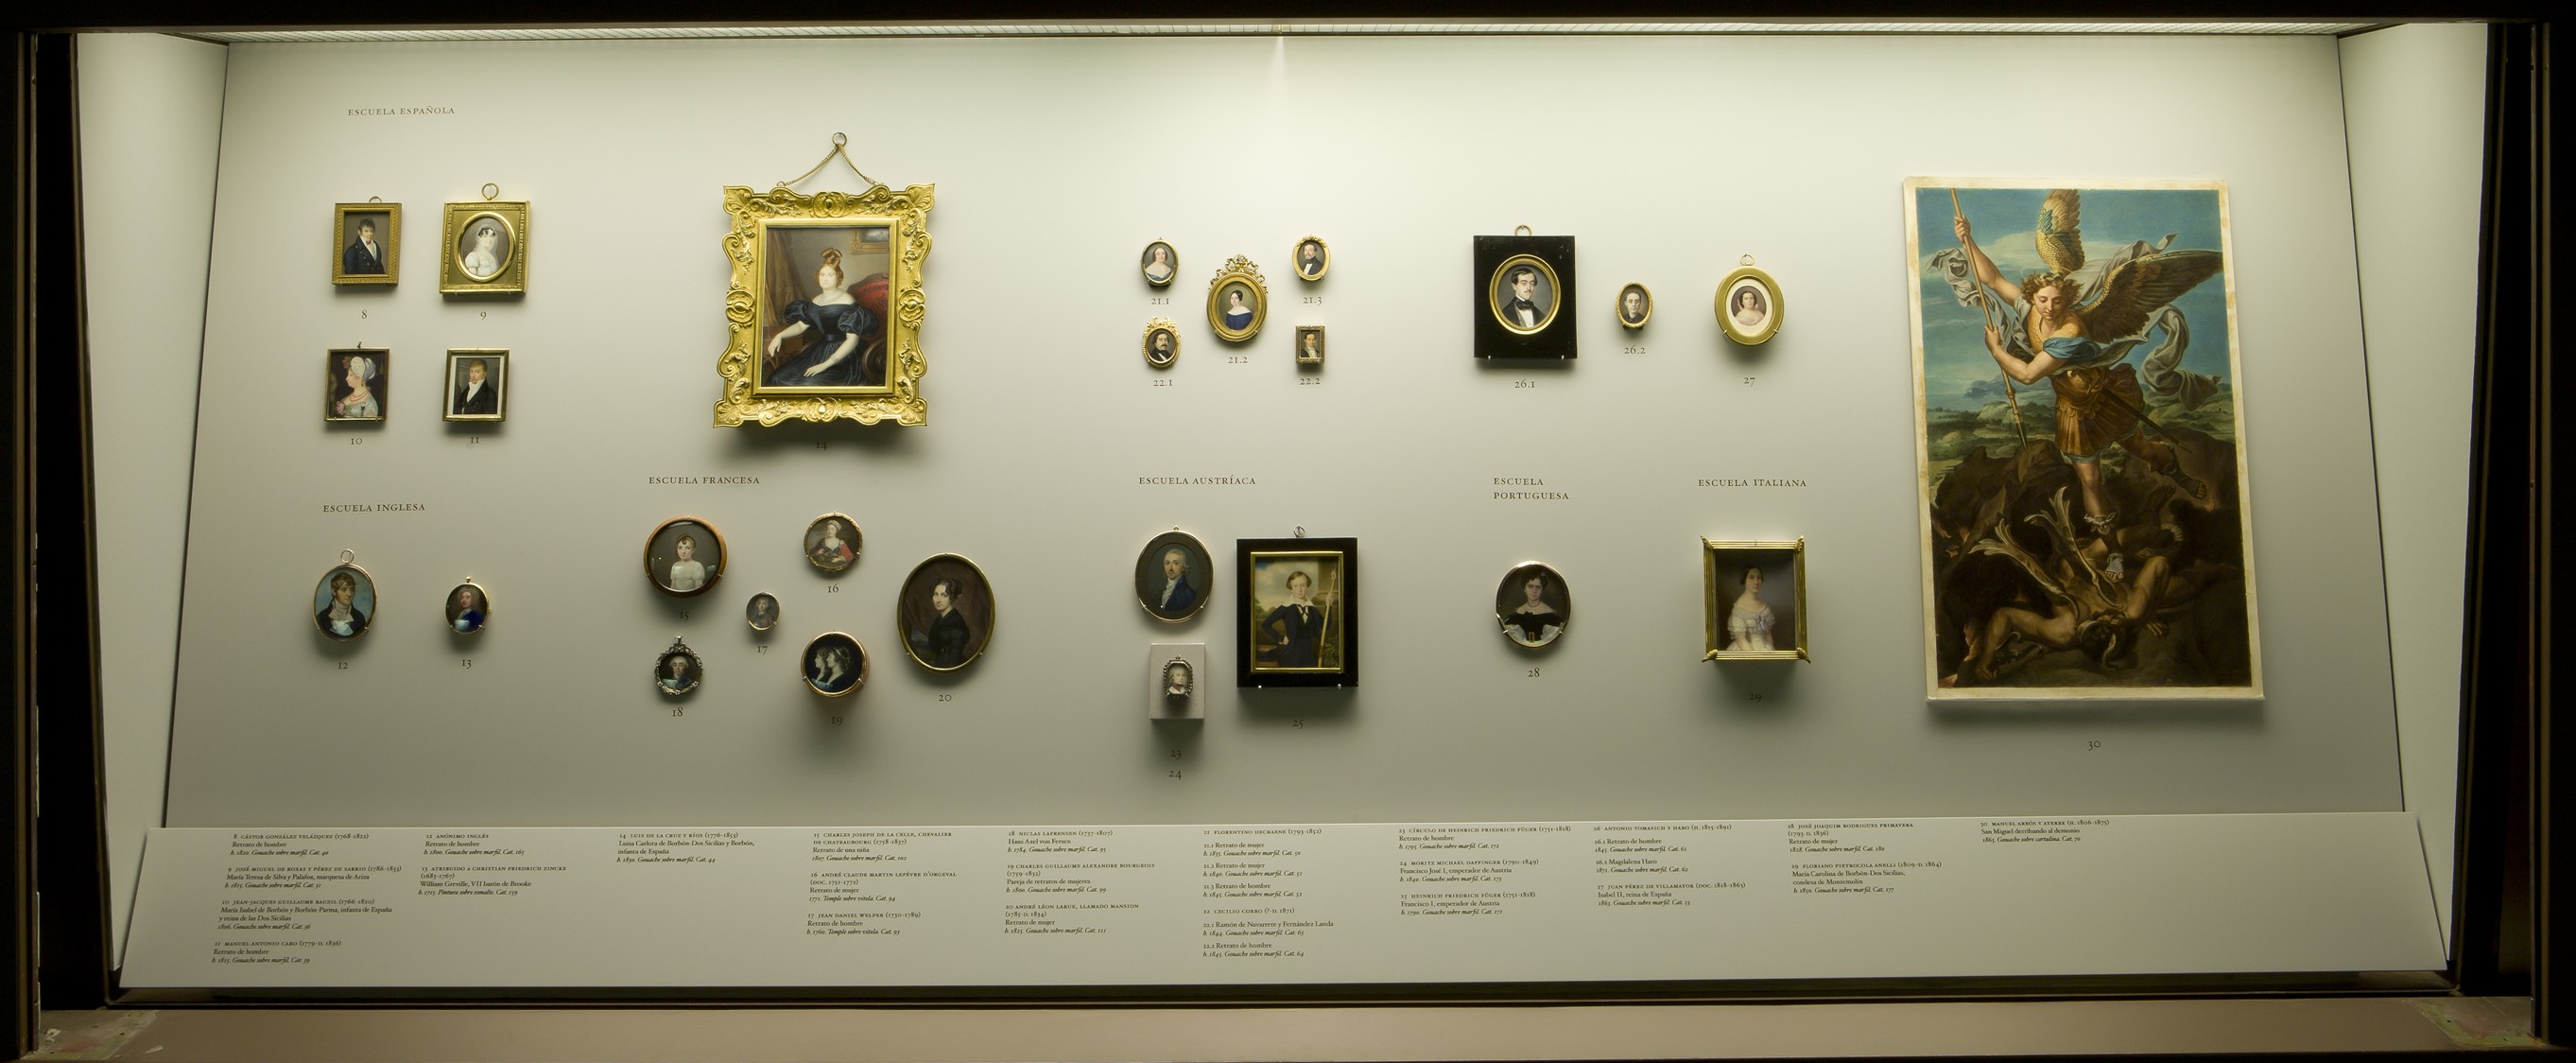 Las miniaturas en el Museo del Prado. Sala de Exposición, junio 2013.